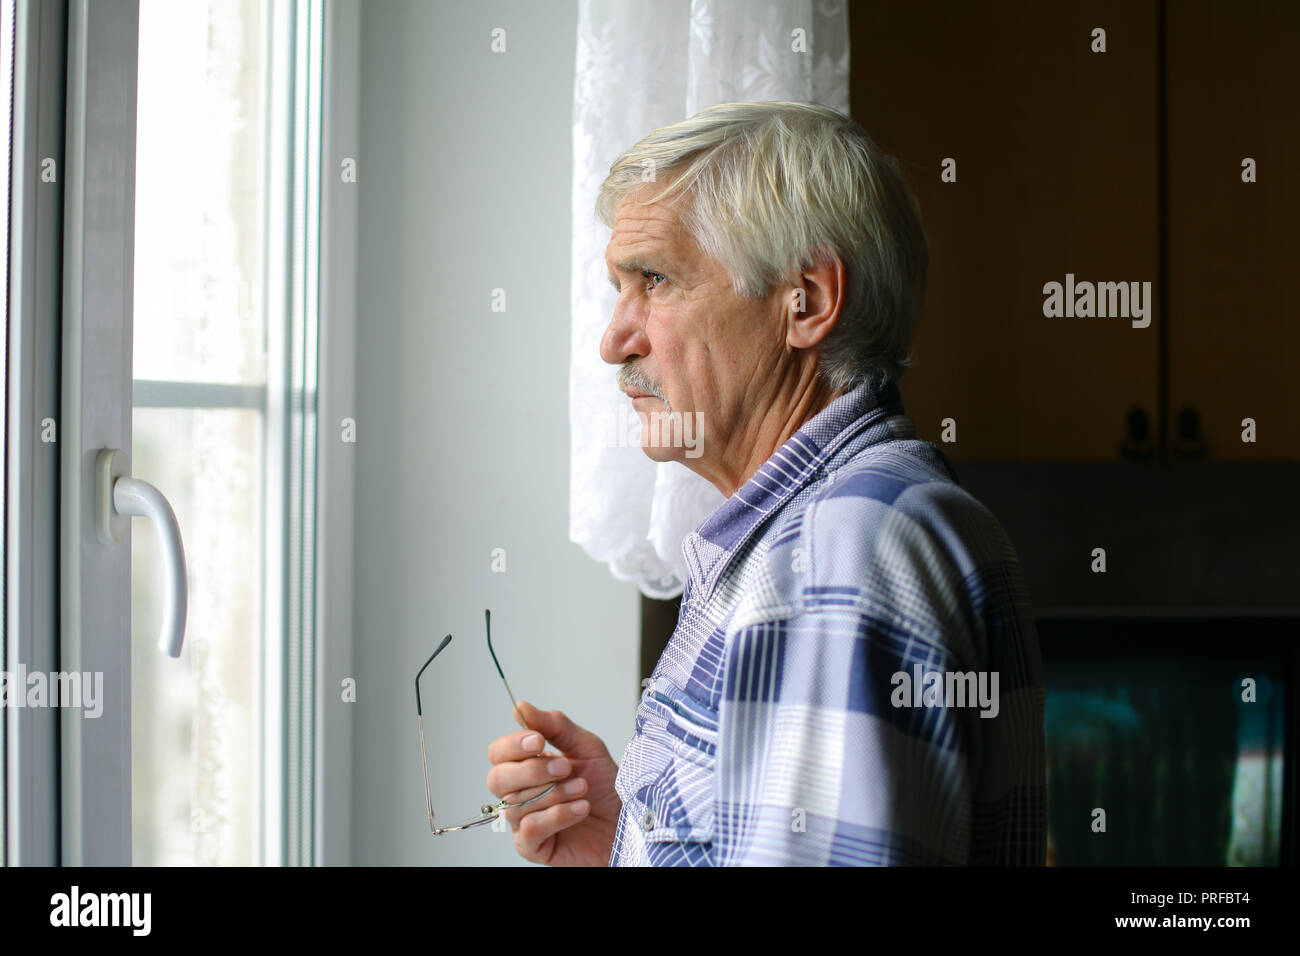 Portrait d'un homme aux cheveux gris à 60 ans. Un homme regarde par la fenêtre. L'homme a une mauvaise vision, il porte des lunettes Banque D'Images